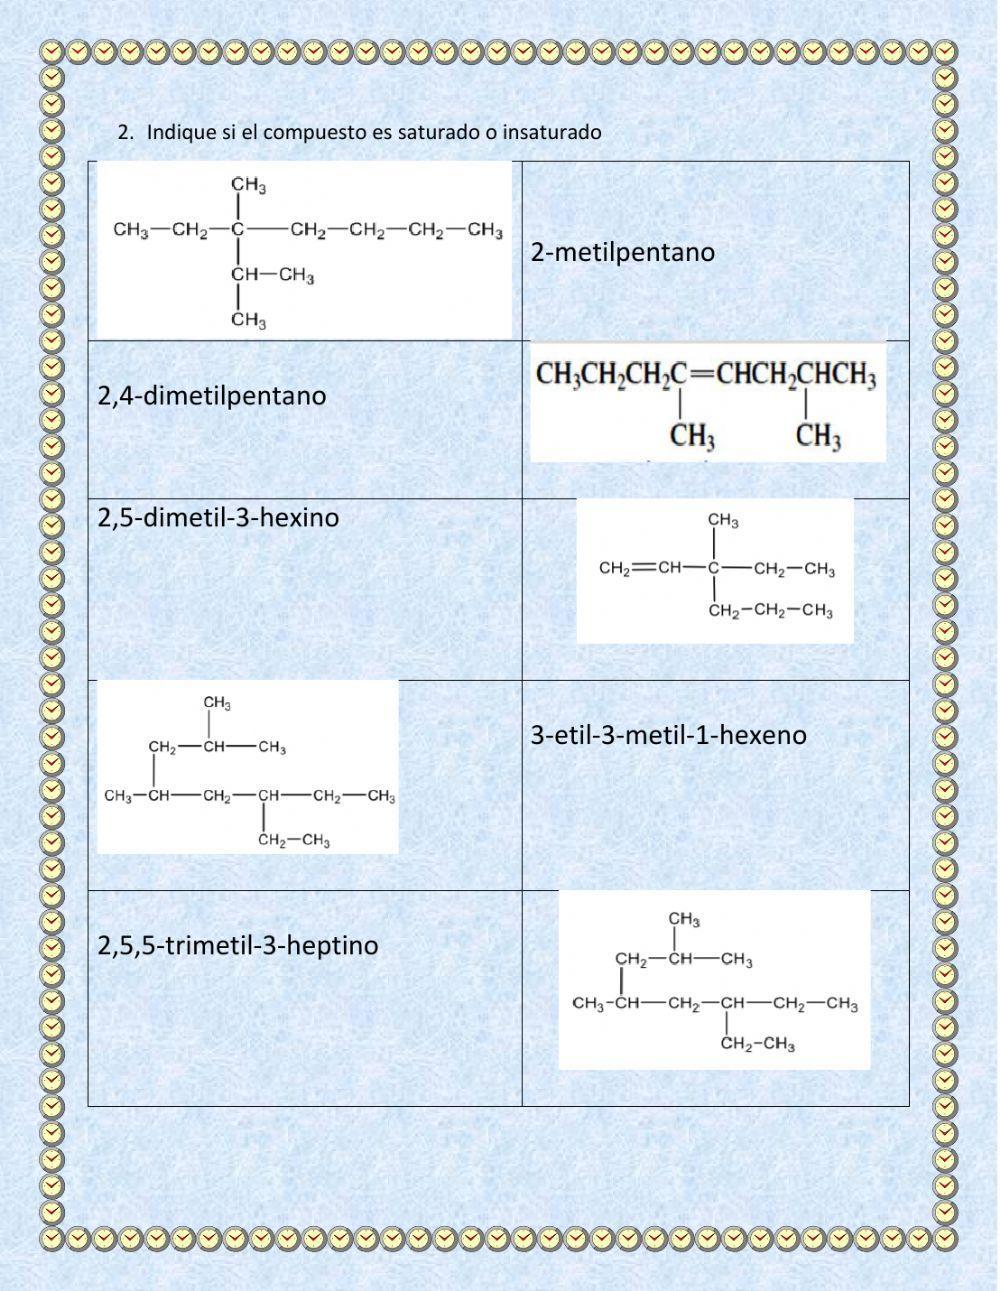 Química Orgánica: Clasificación de hidrocarburos